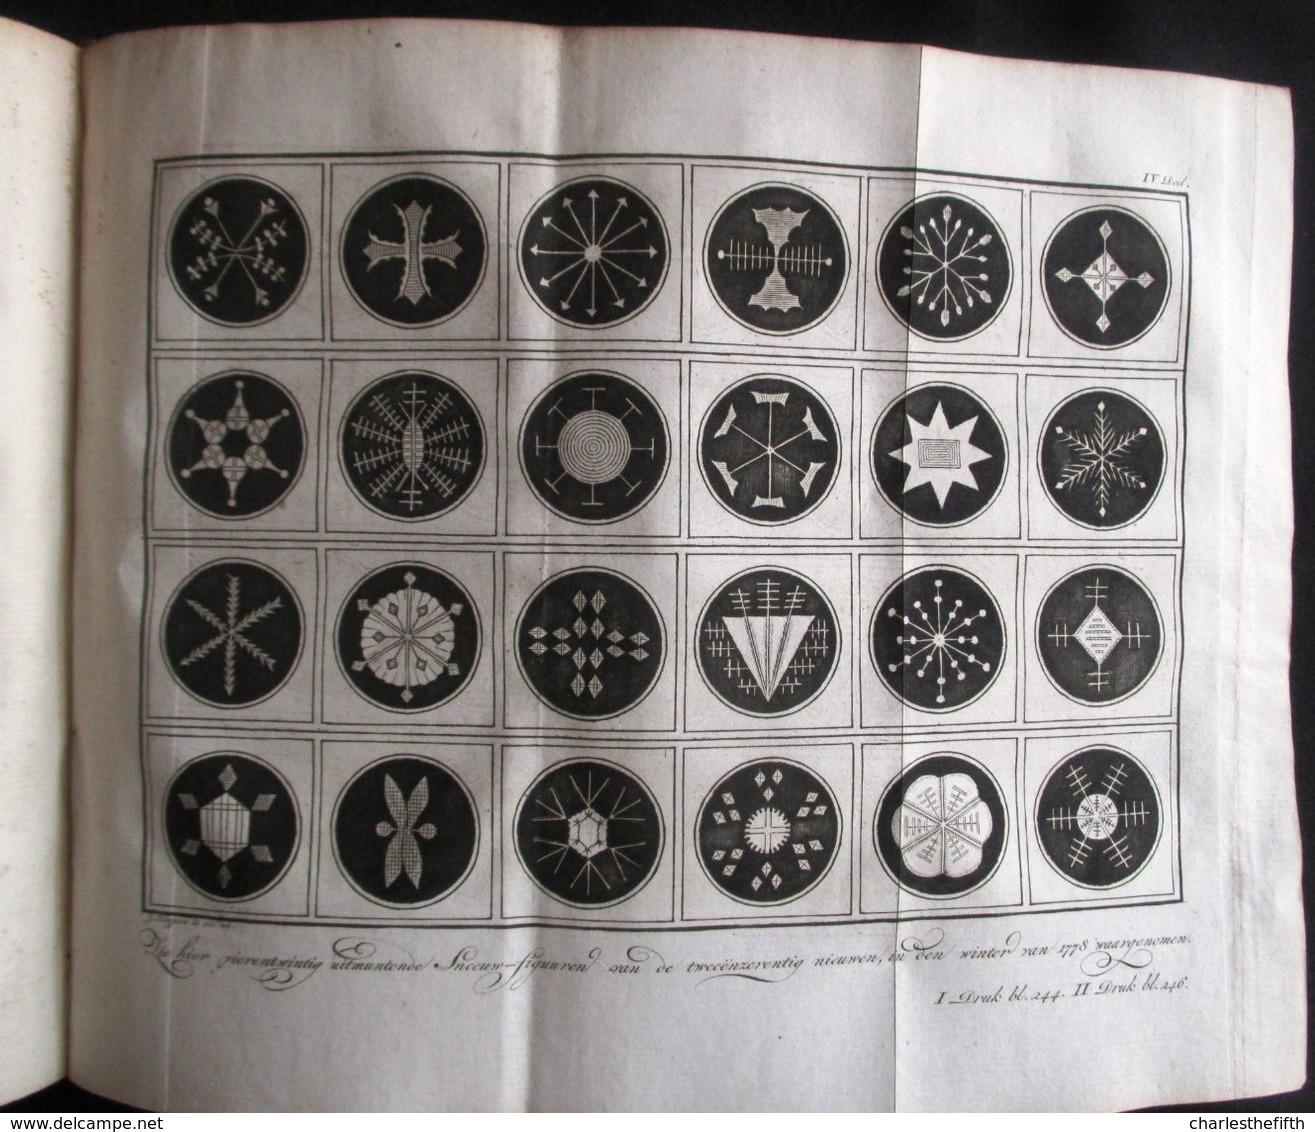 1778 KATECHISMUS DER NATUUR door J.F. MARTINET  4 DELEN KOMPLEET MET 19 UITSLAANDE PLATEN - AMSTERDAM by JOHANNES ALLART